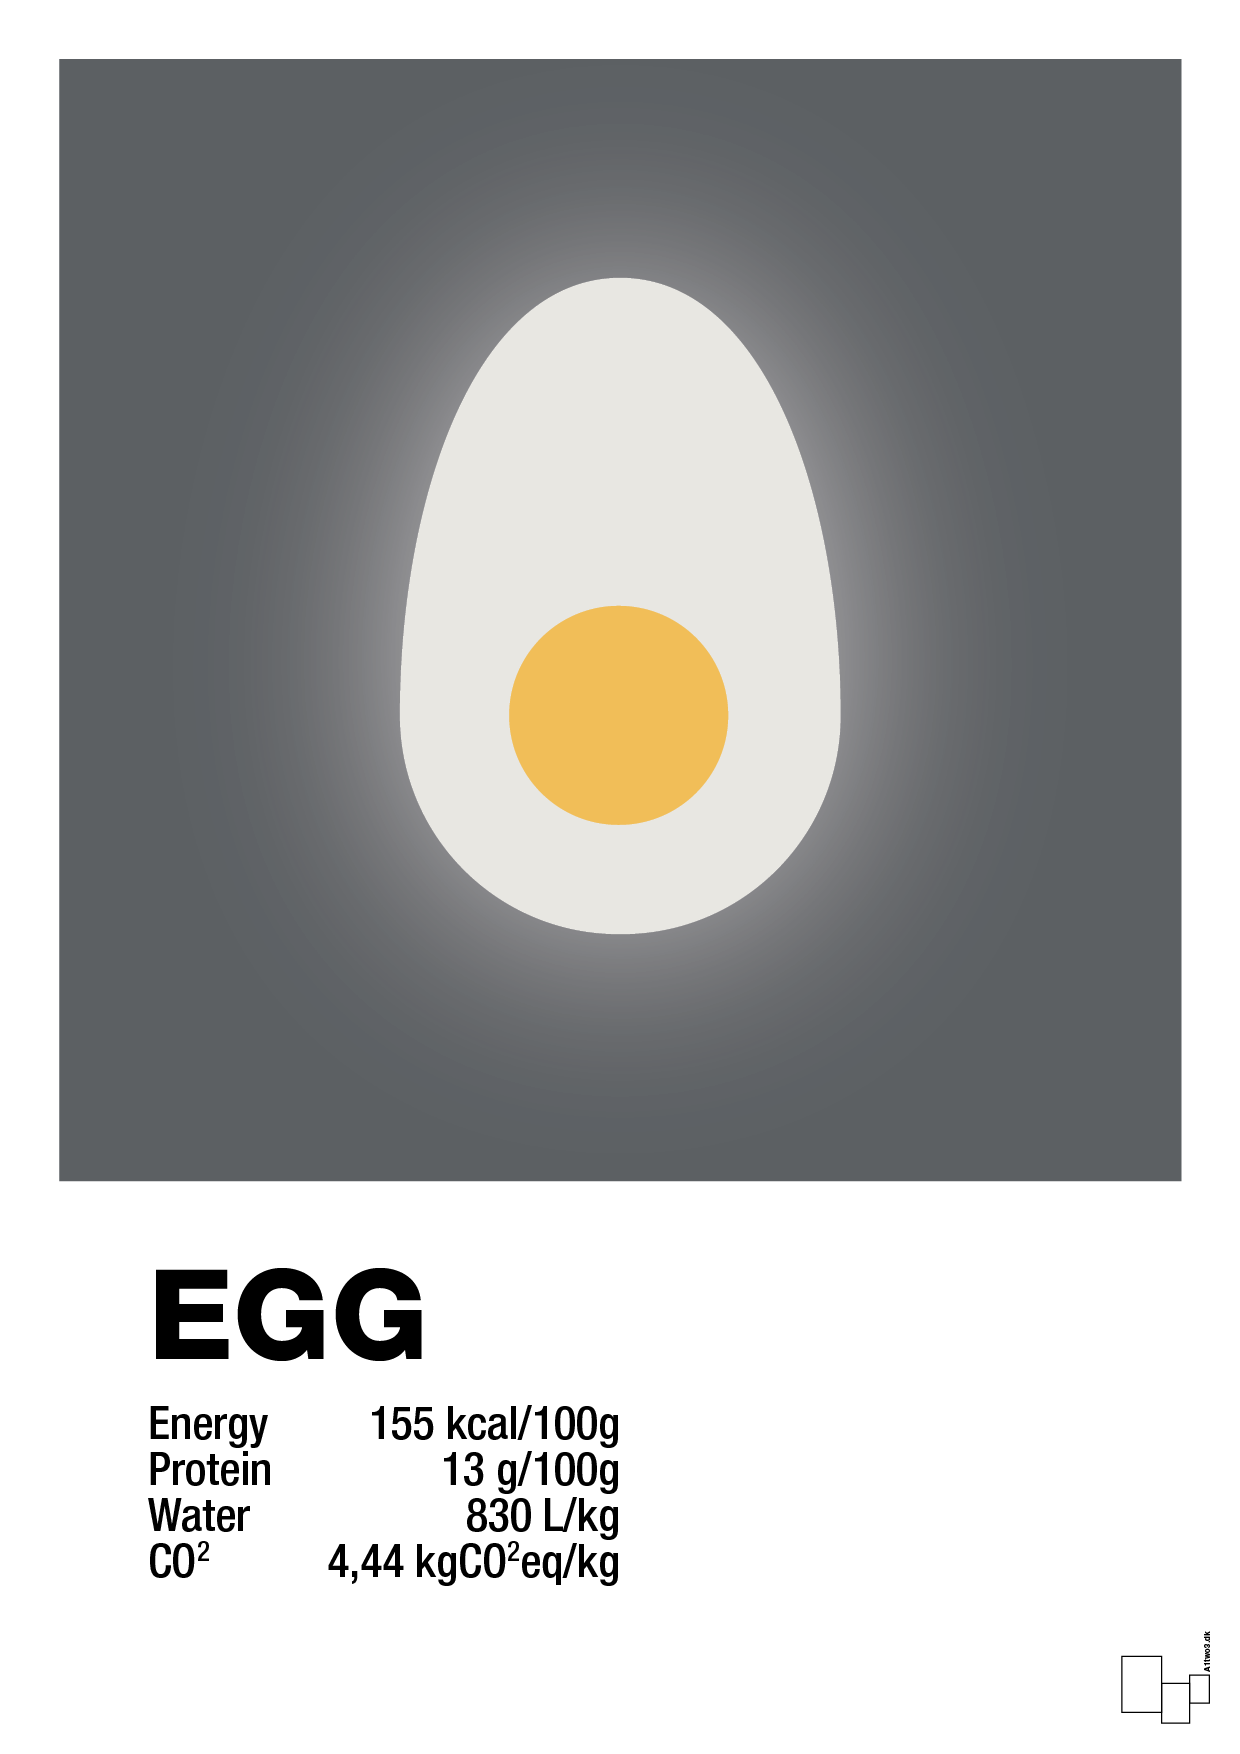 egg nutrition og miljø - Plakat med Mad & Drikke i Graphic Charcoal